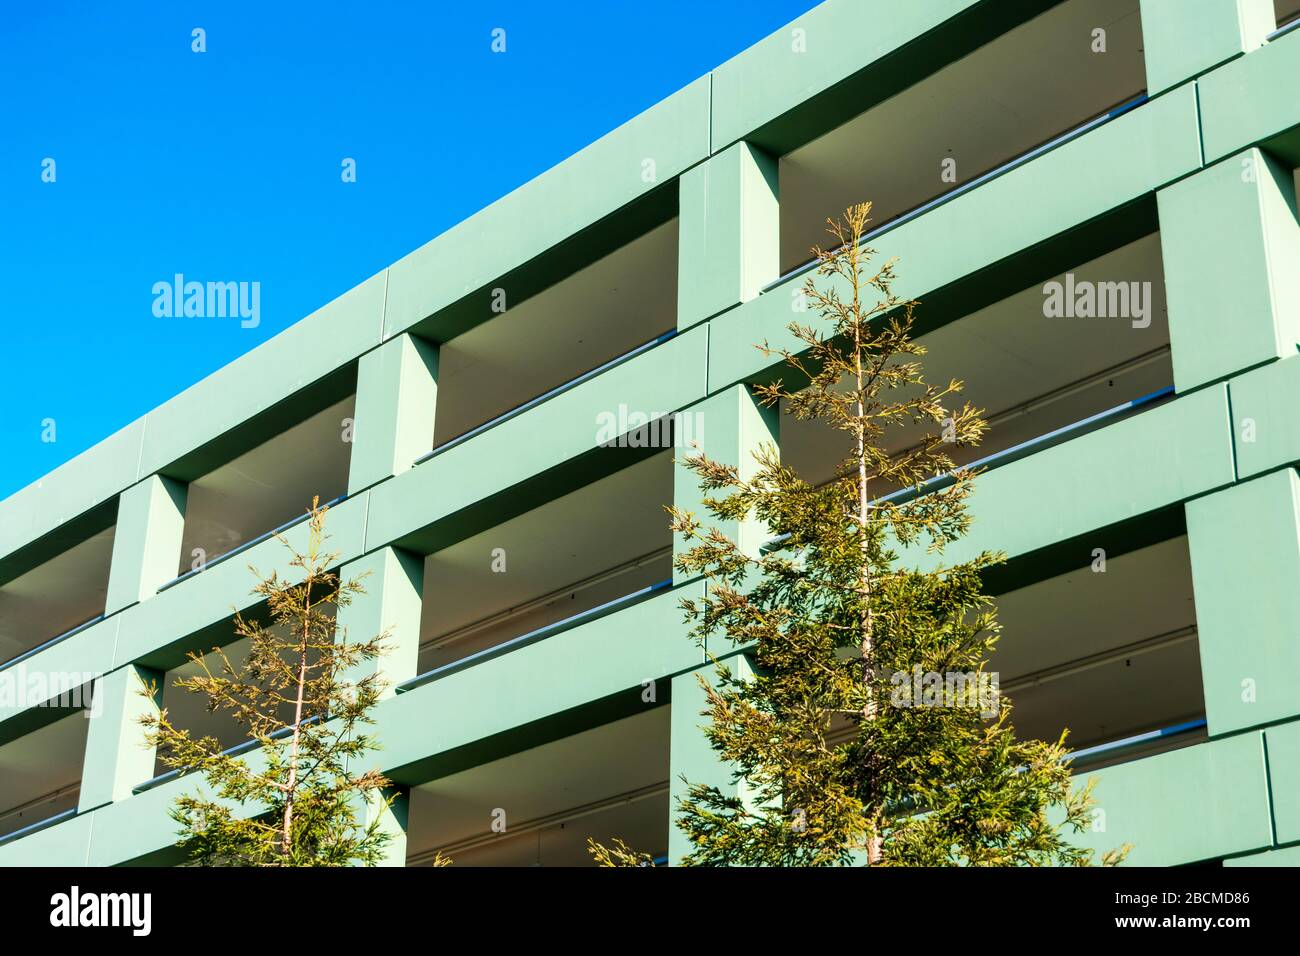 Parkhaus auf mehreren Ebenen, Fassade und Außenansicht. Grüne Vordergrundbäume. Blauer Himmel im Hintergrund. Stockfoto